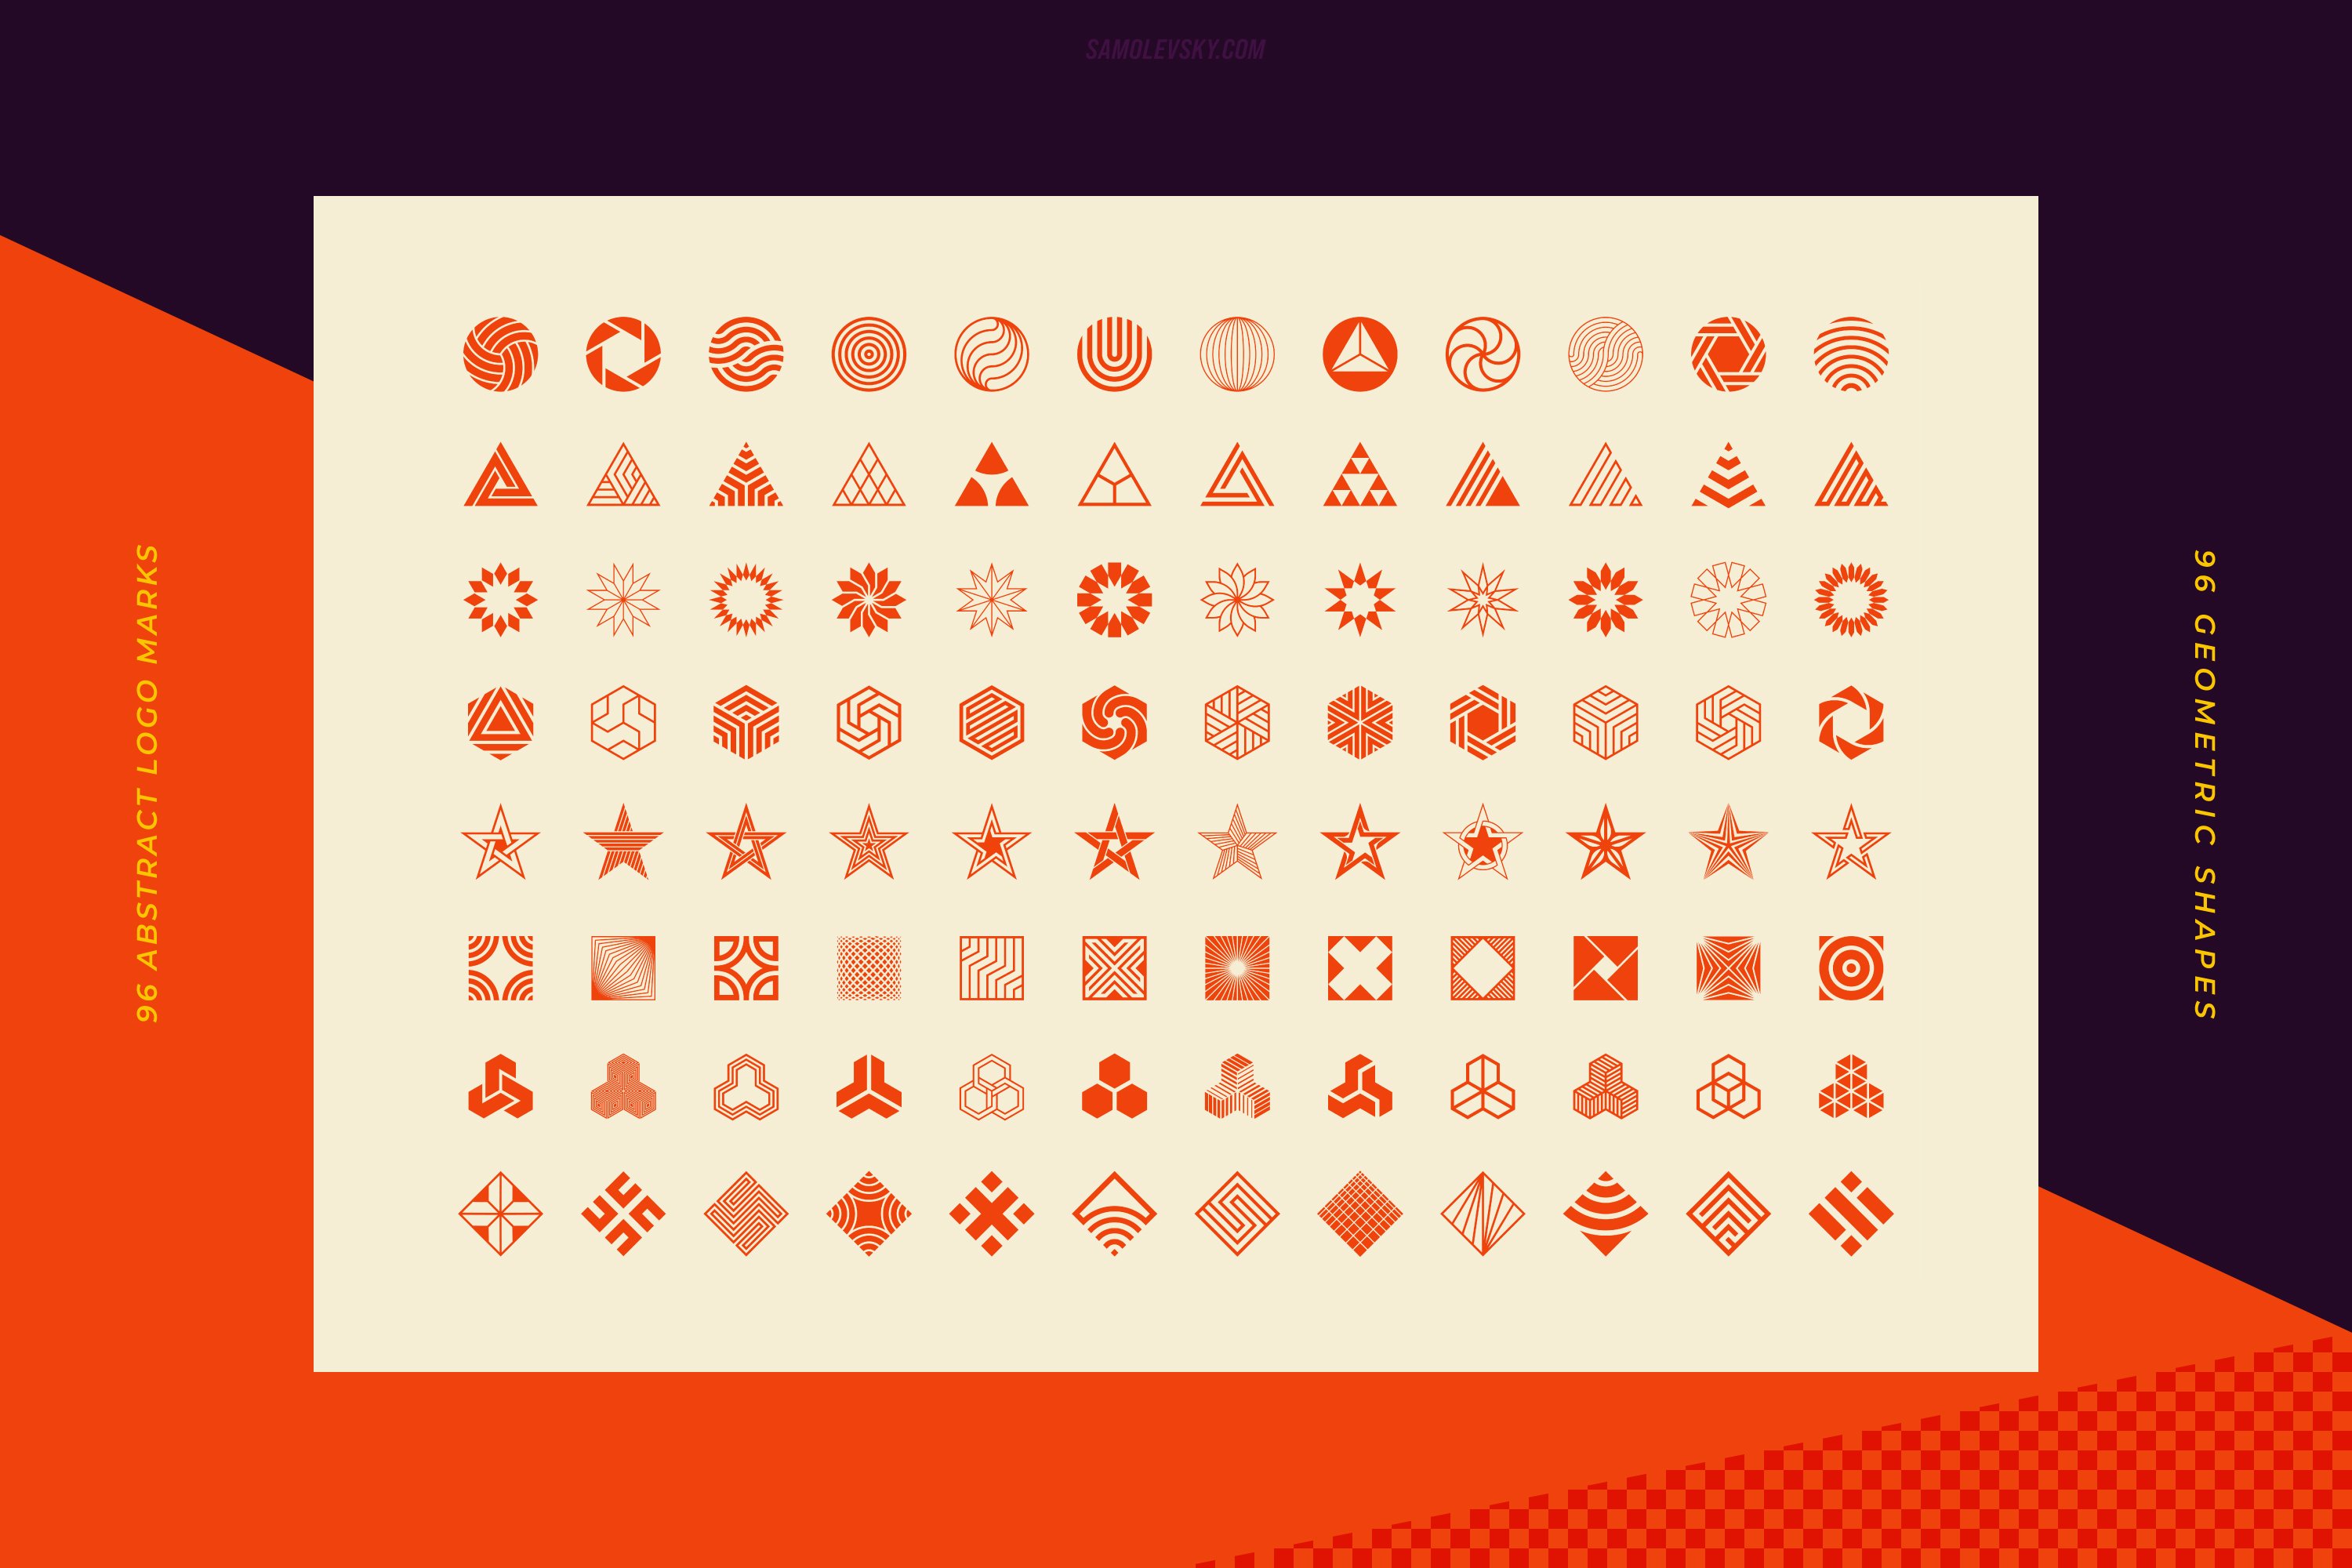 96 个抽象几何形状标志和图形元素矢量素材-96 Logo marks & geometric shapes